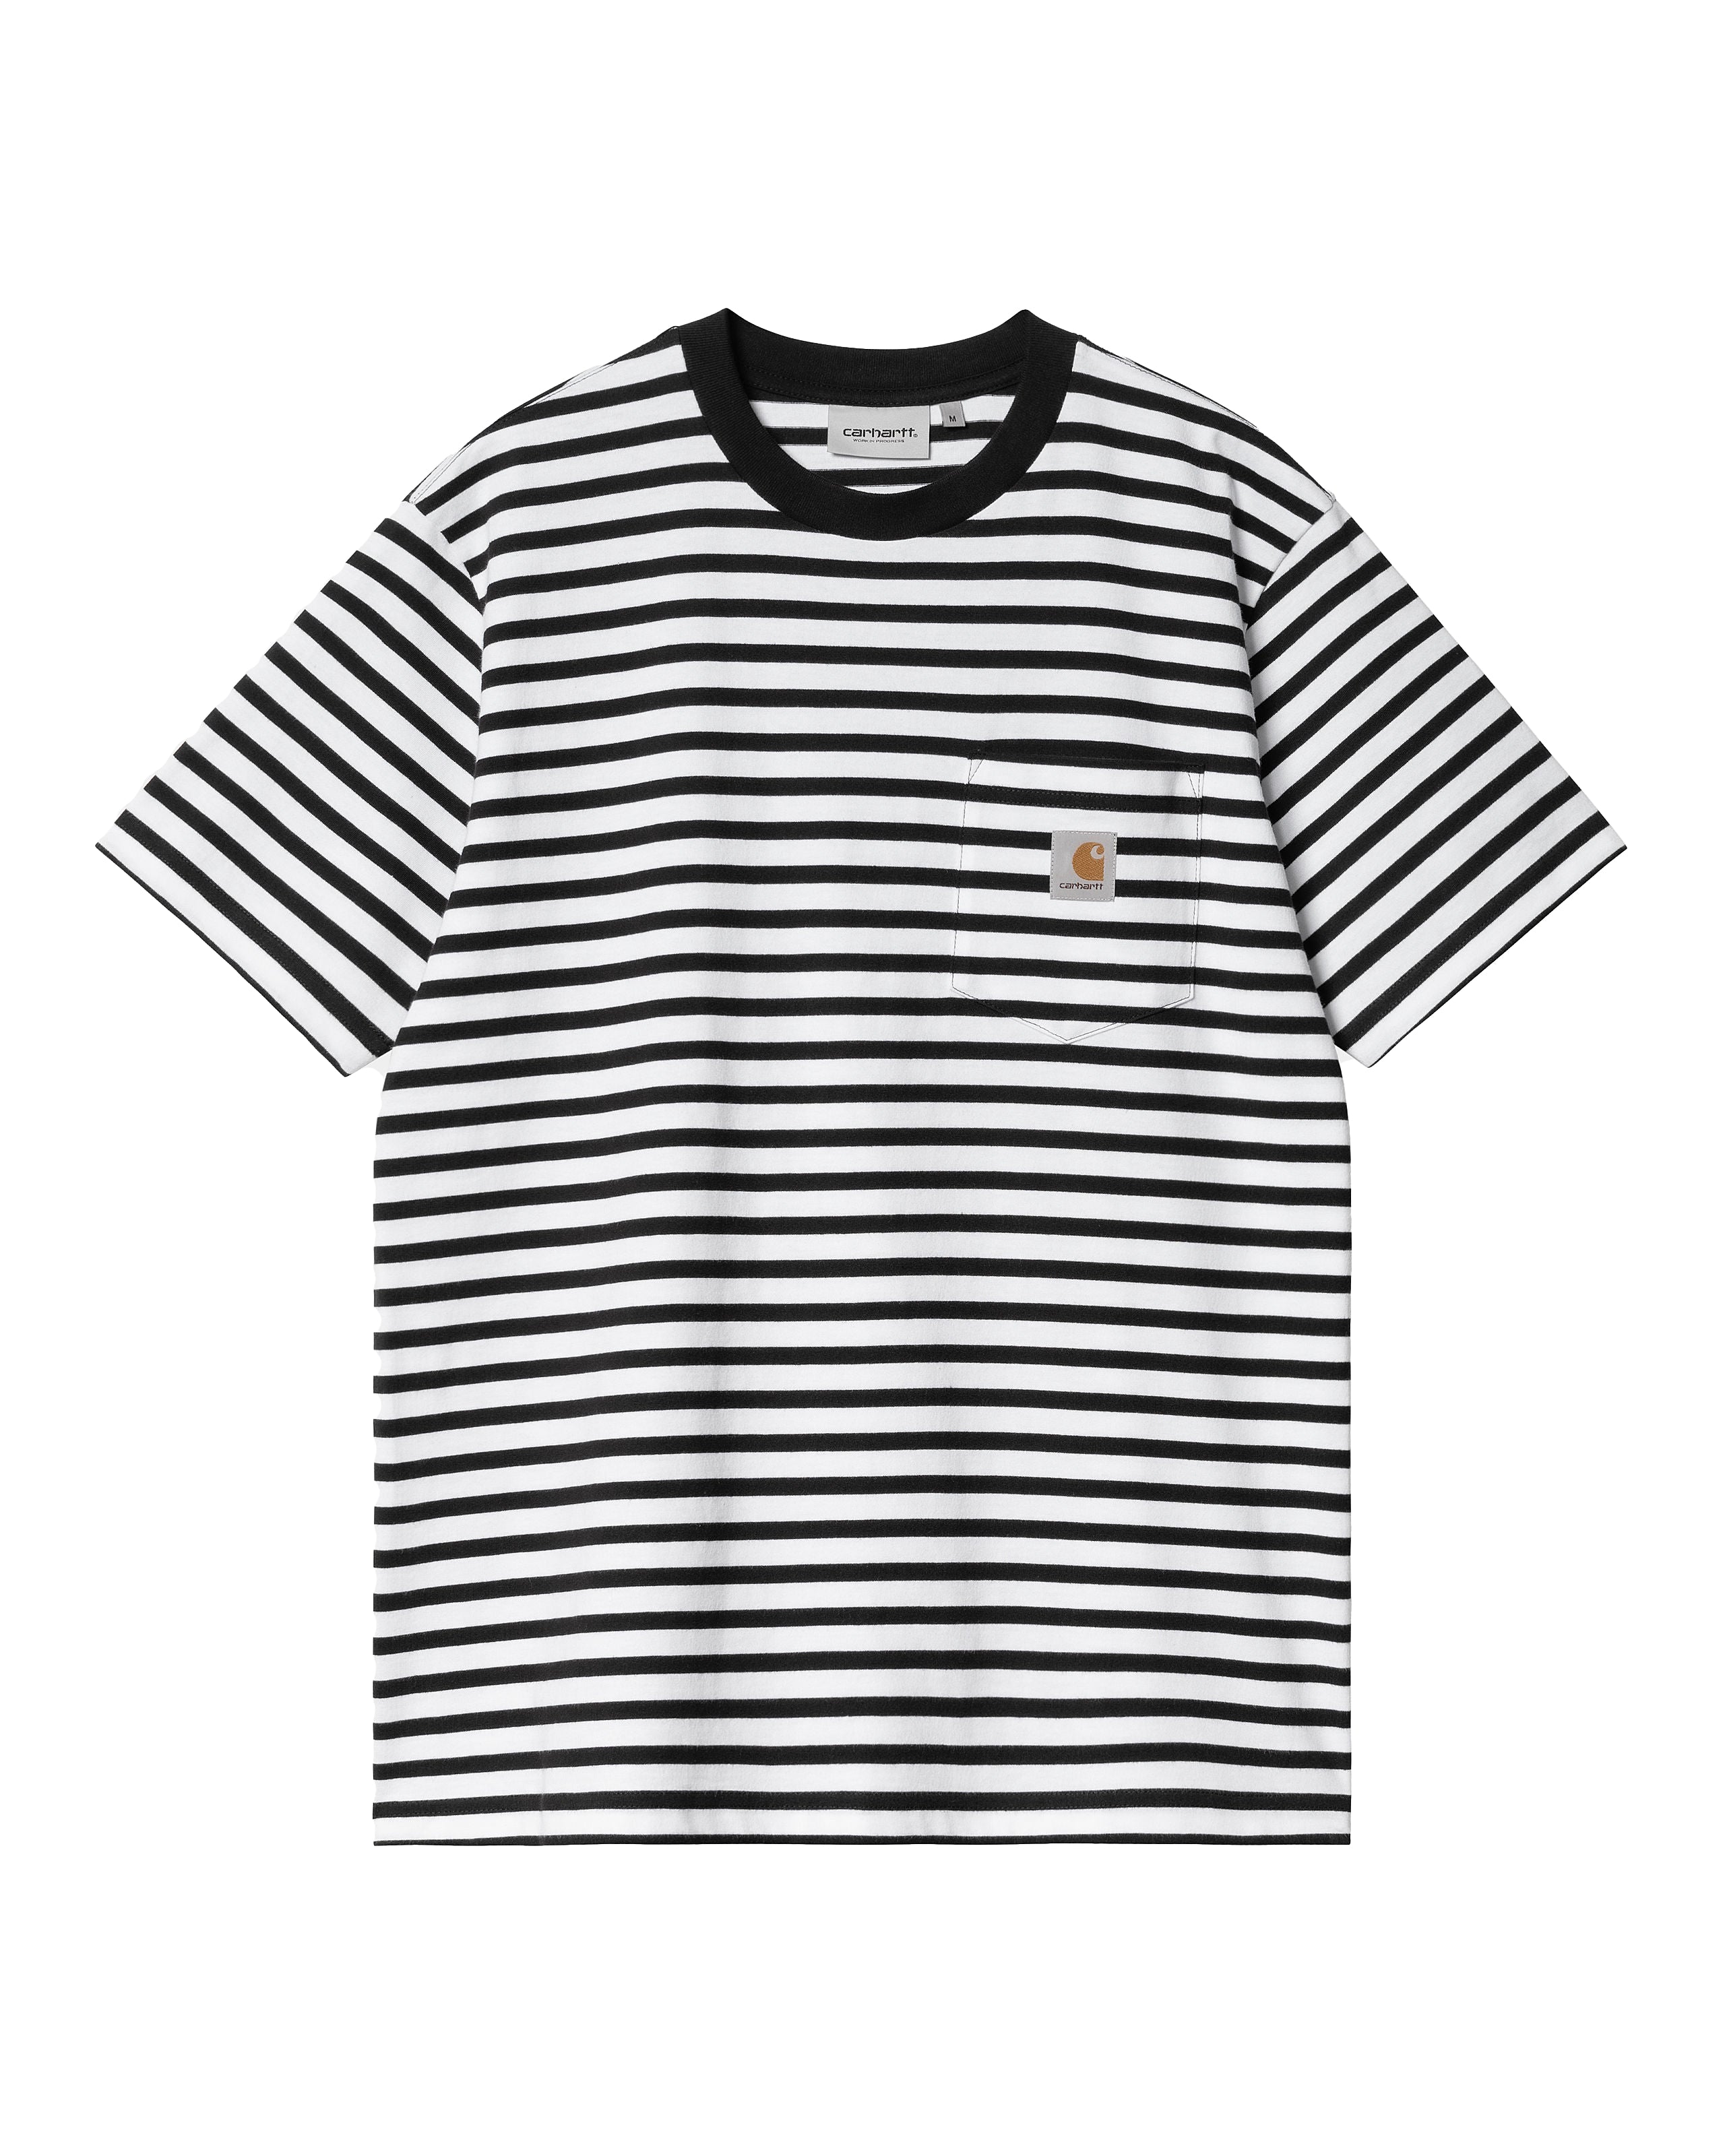 SS Seidler Pocket T-Shirt - Stripe Black/White